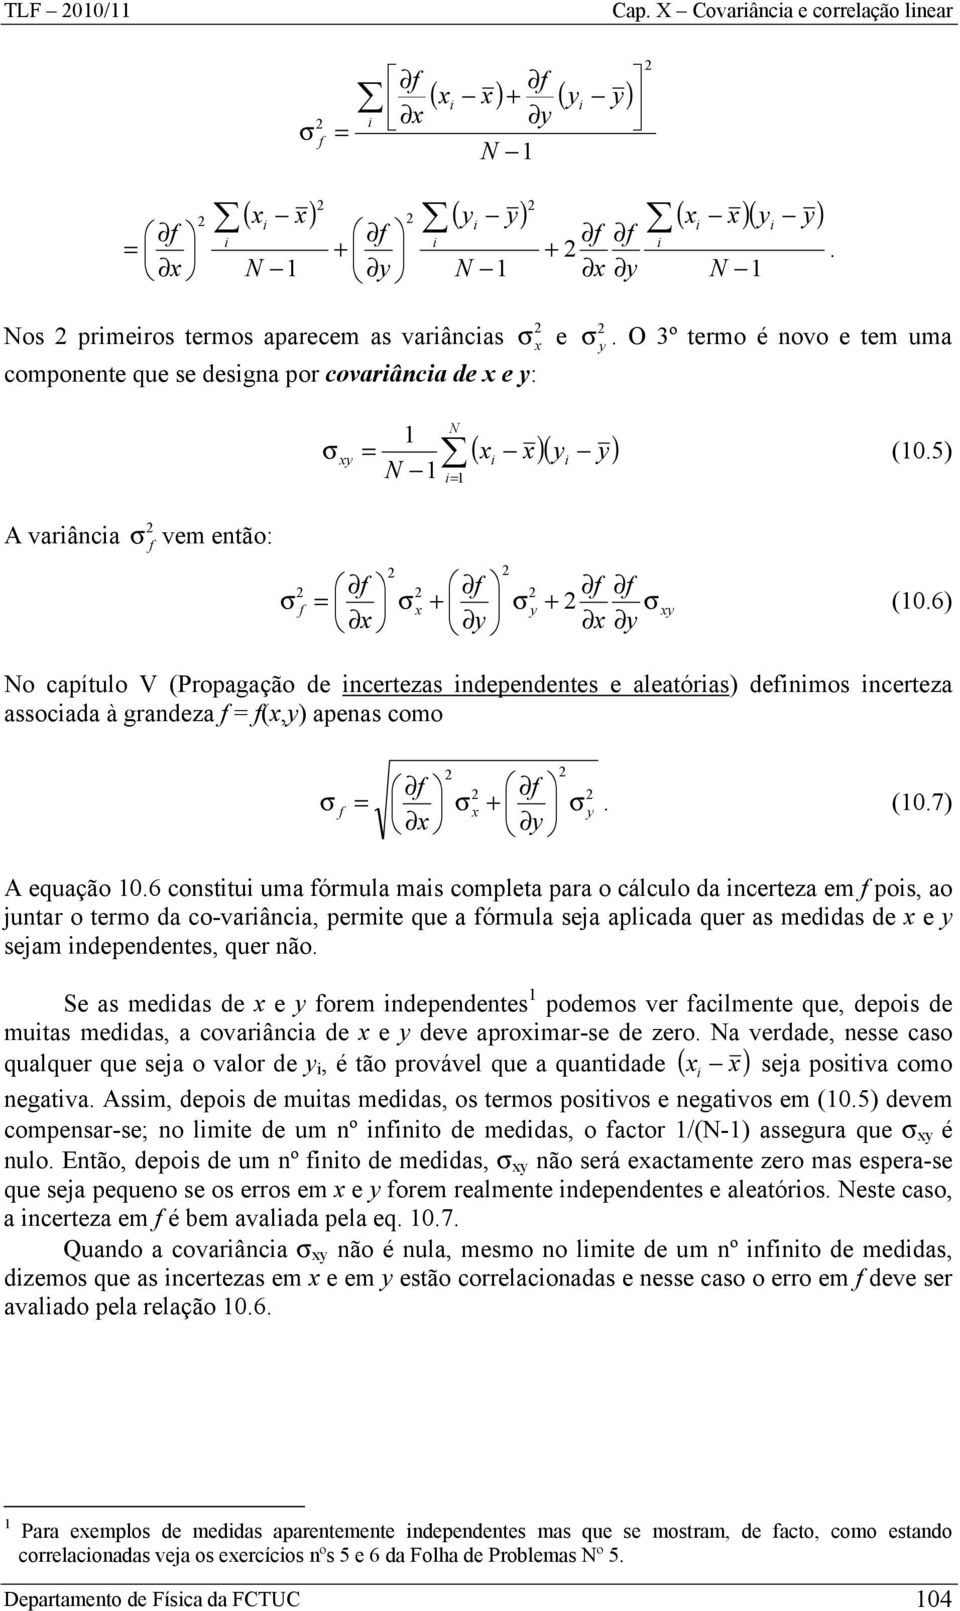 6) o capítulo V (Propagação de ncertezas ndependentes e aleatóras) denmos ncerteza assocada à grandeza (,) apenas como. (0.7) A equação 0.